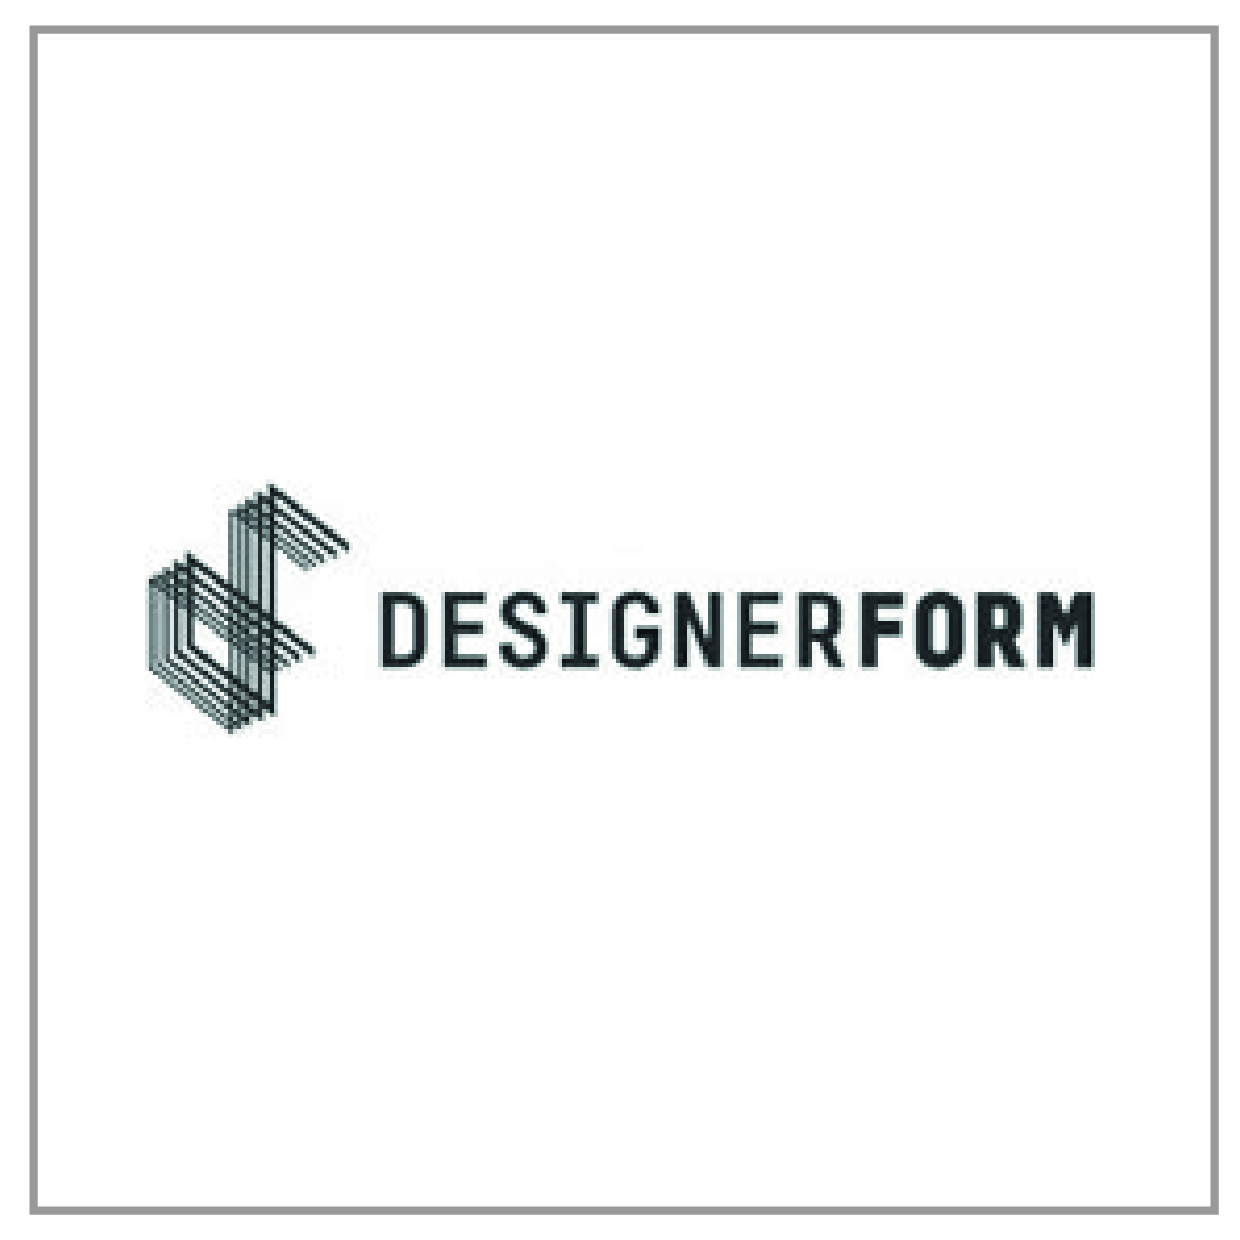 designer-form